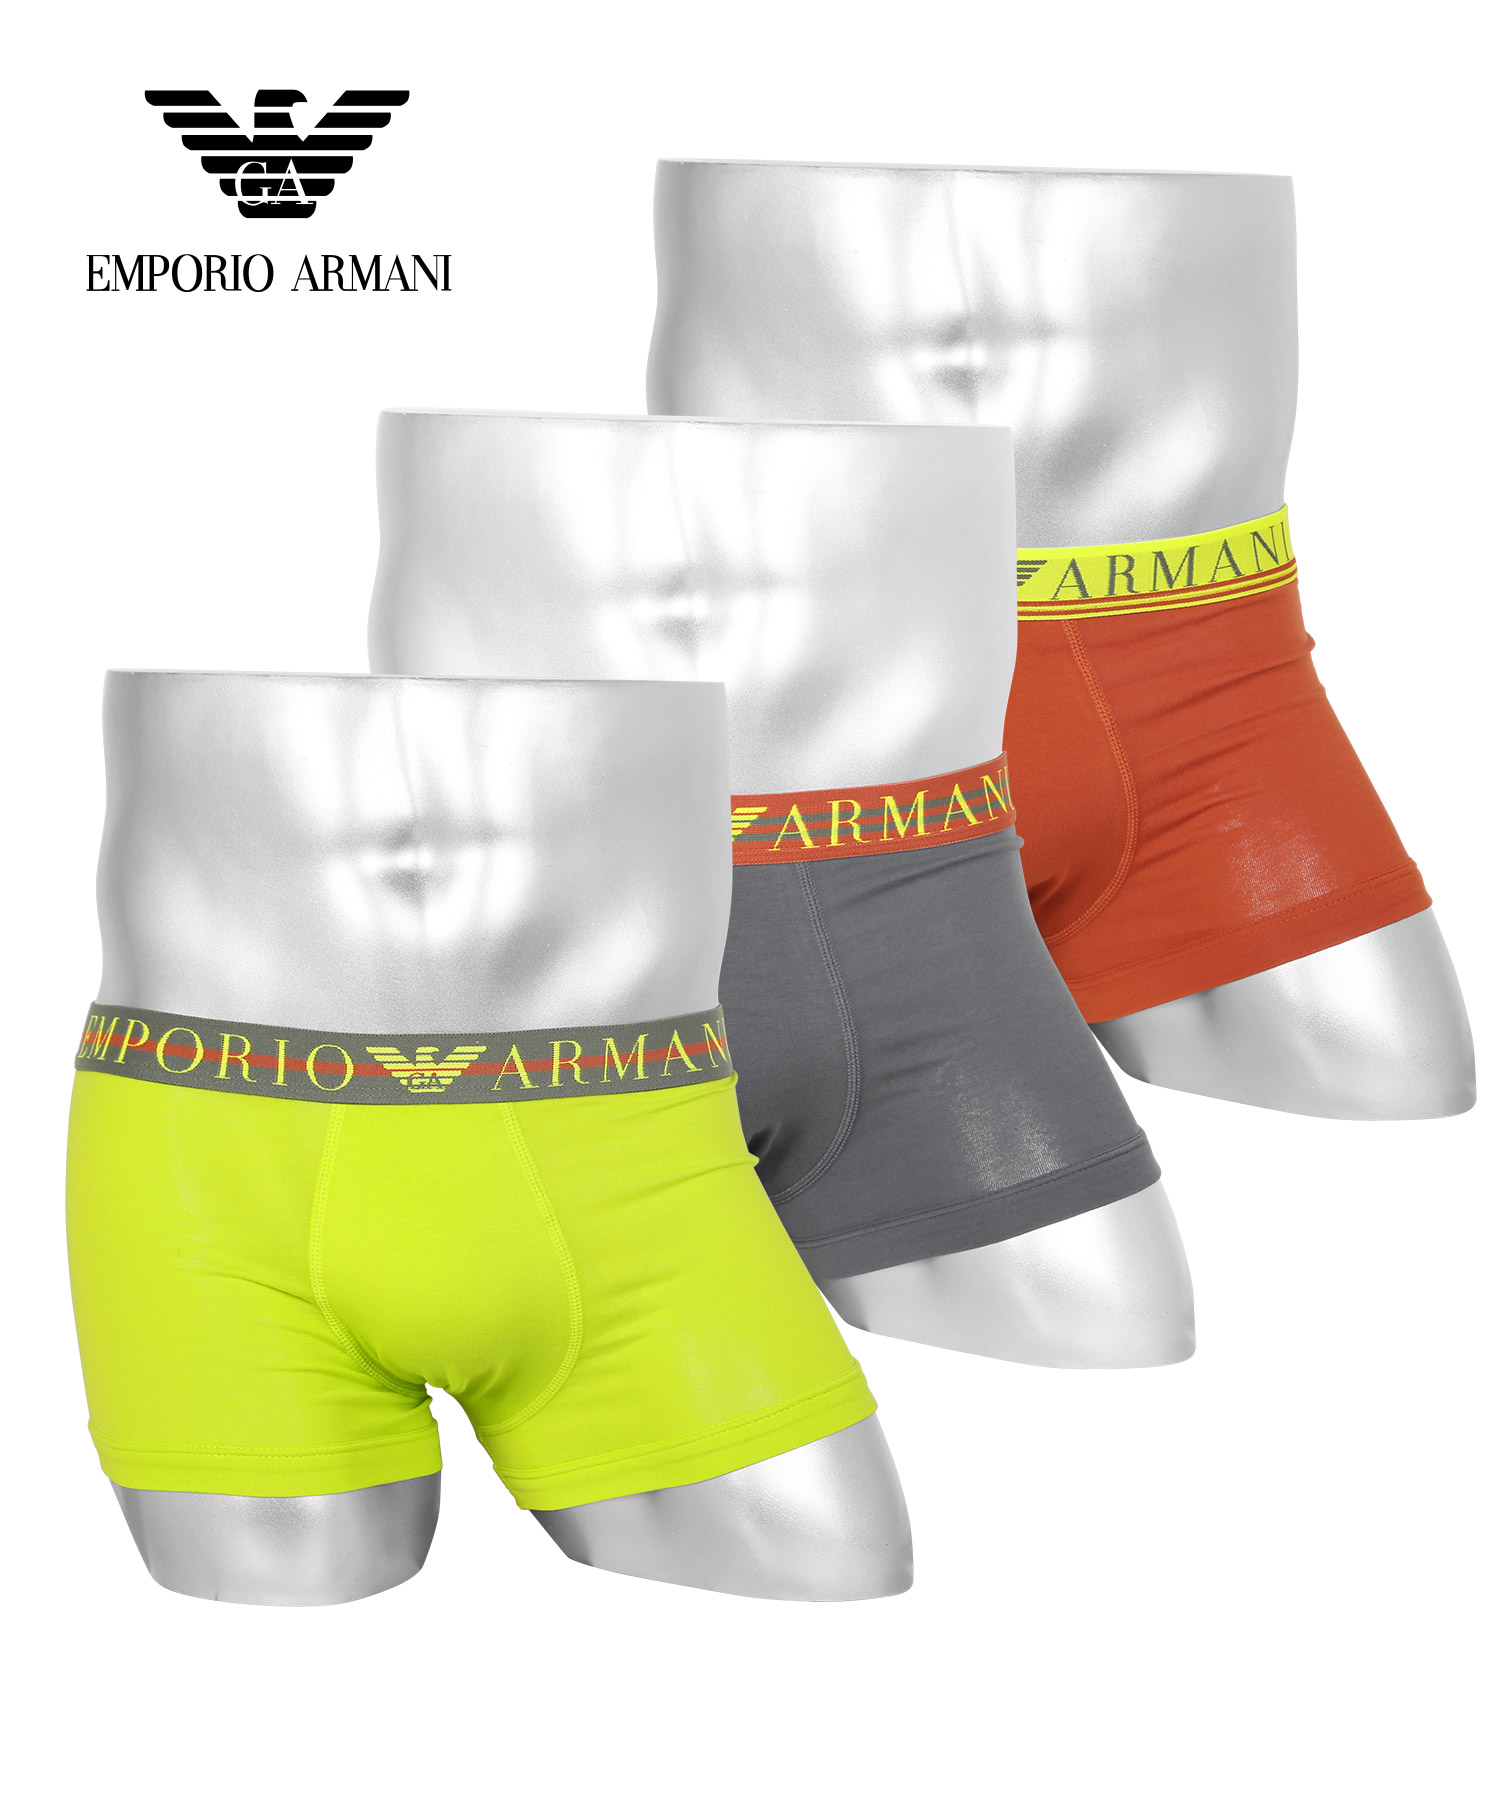 エンポリオ アルマーニ EMPORIO ARMANI ボクサーパンツ 3枚セット メンズ アンダーウェア 男性 下着 コットン 父の日